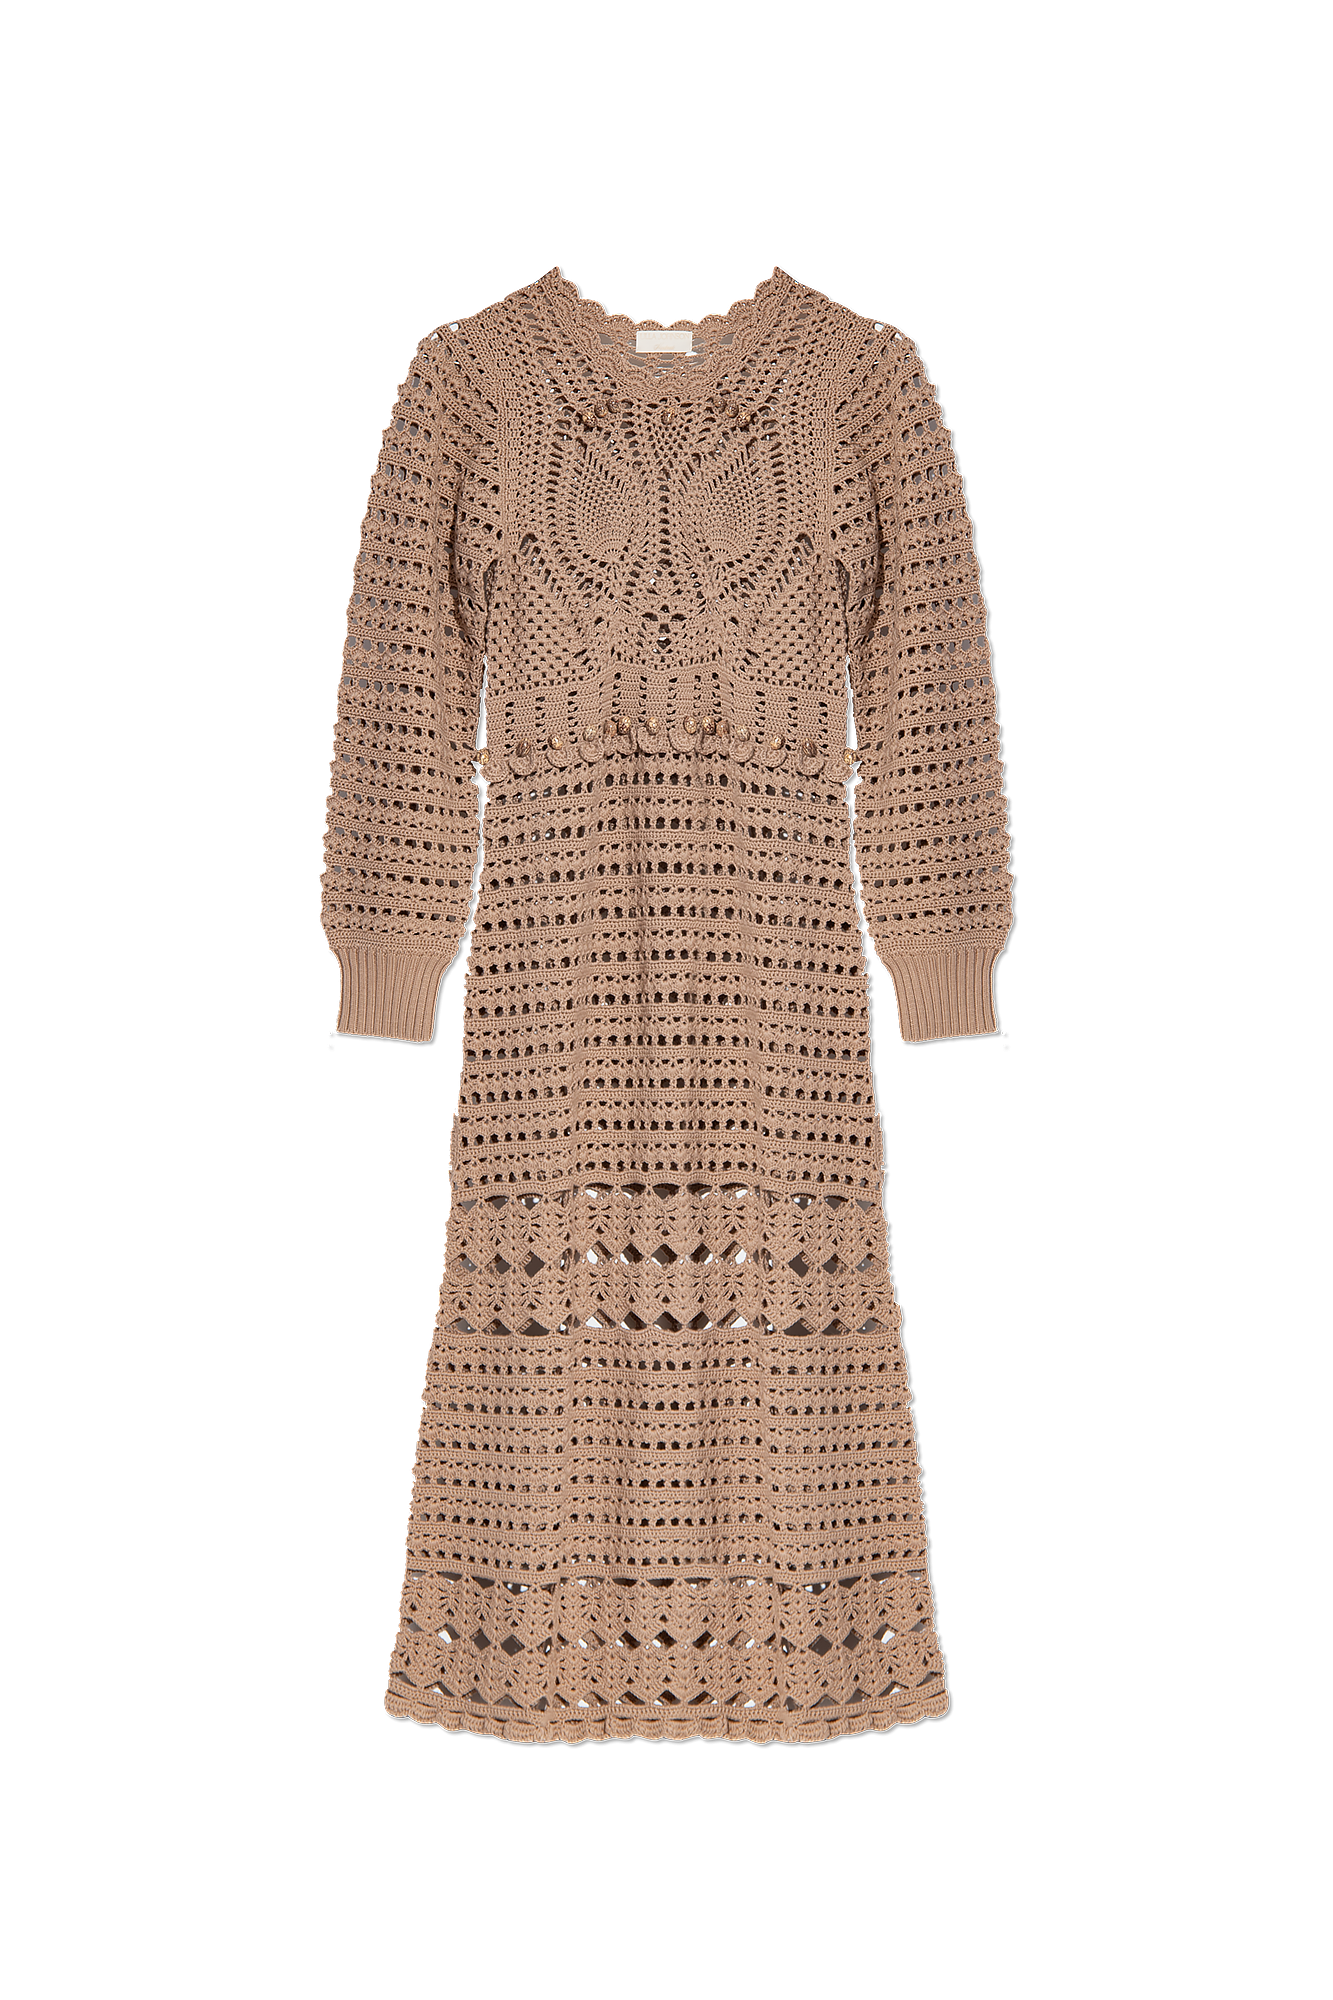 Ulla Johnson 'Prisha' crochet dress, Women's Clothing